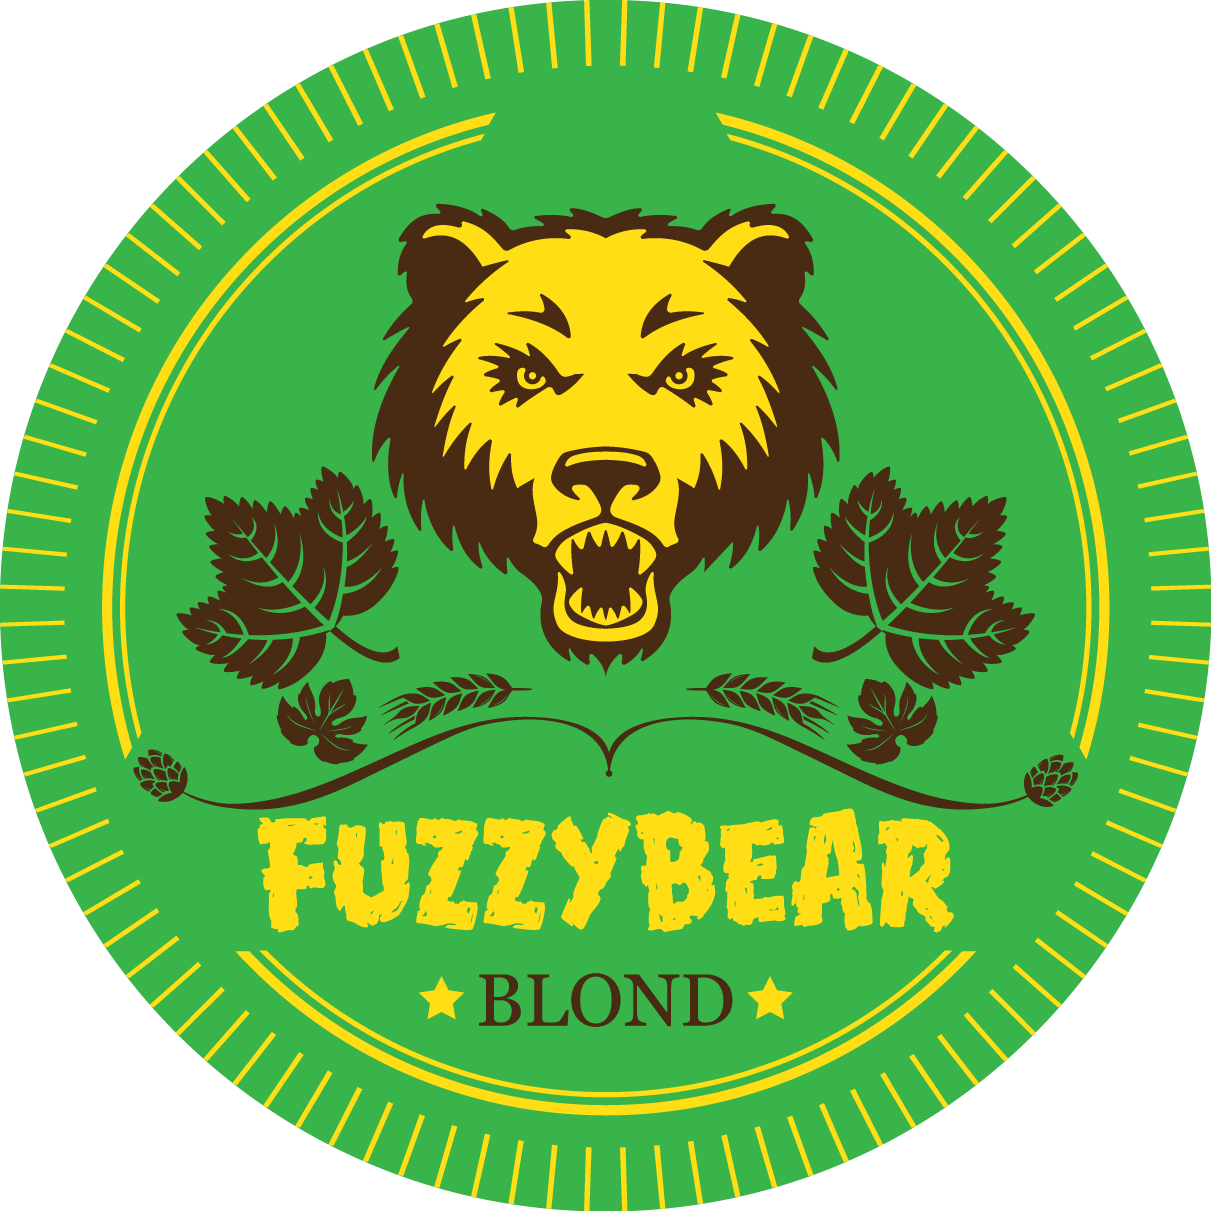 Animal army brewery fuzzy bear ale logo